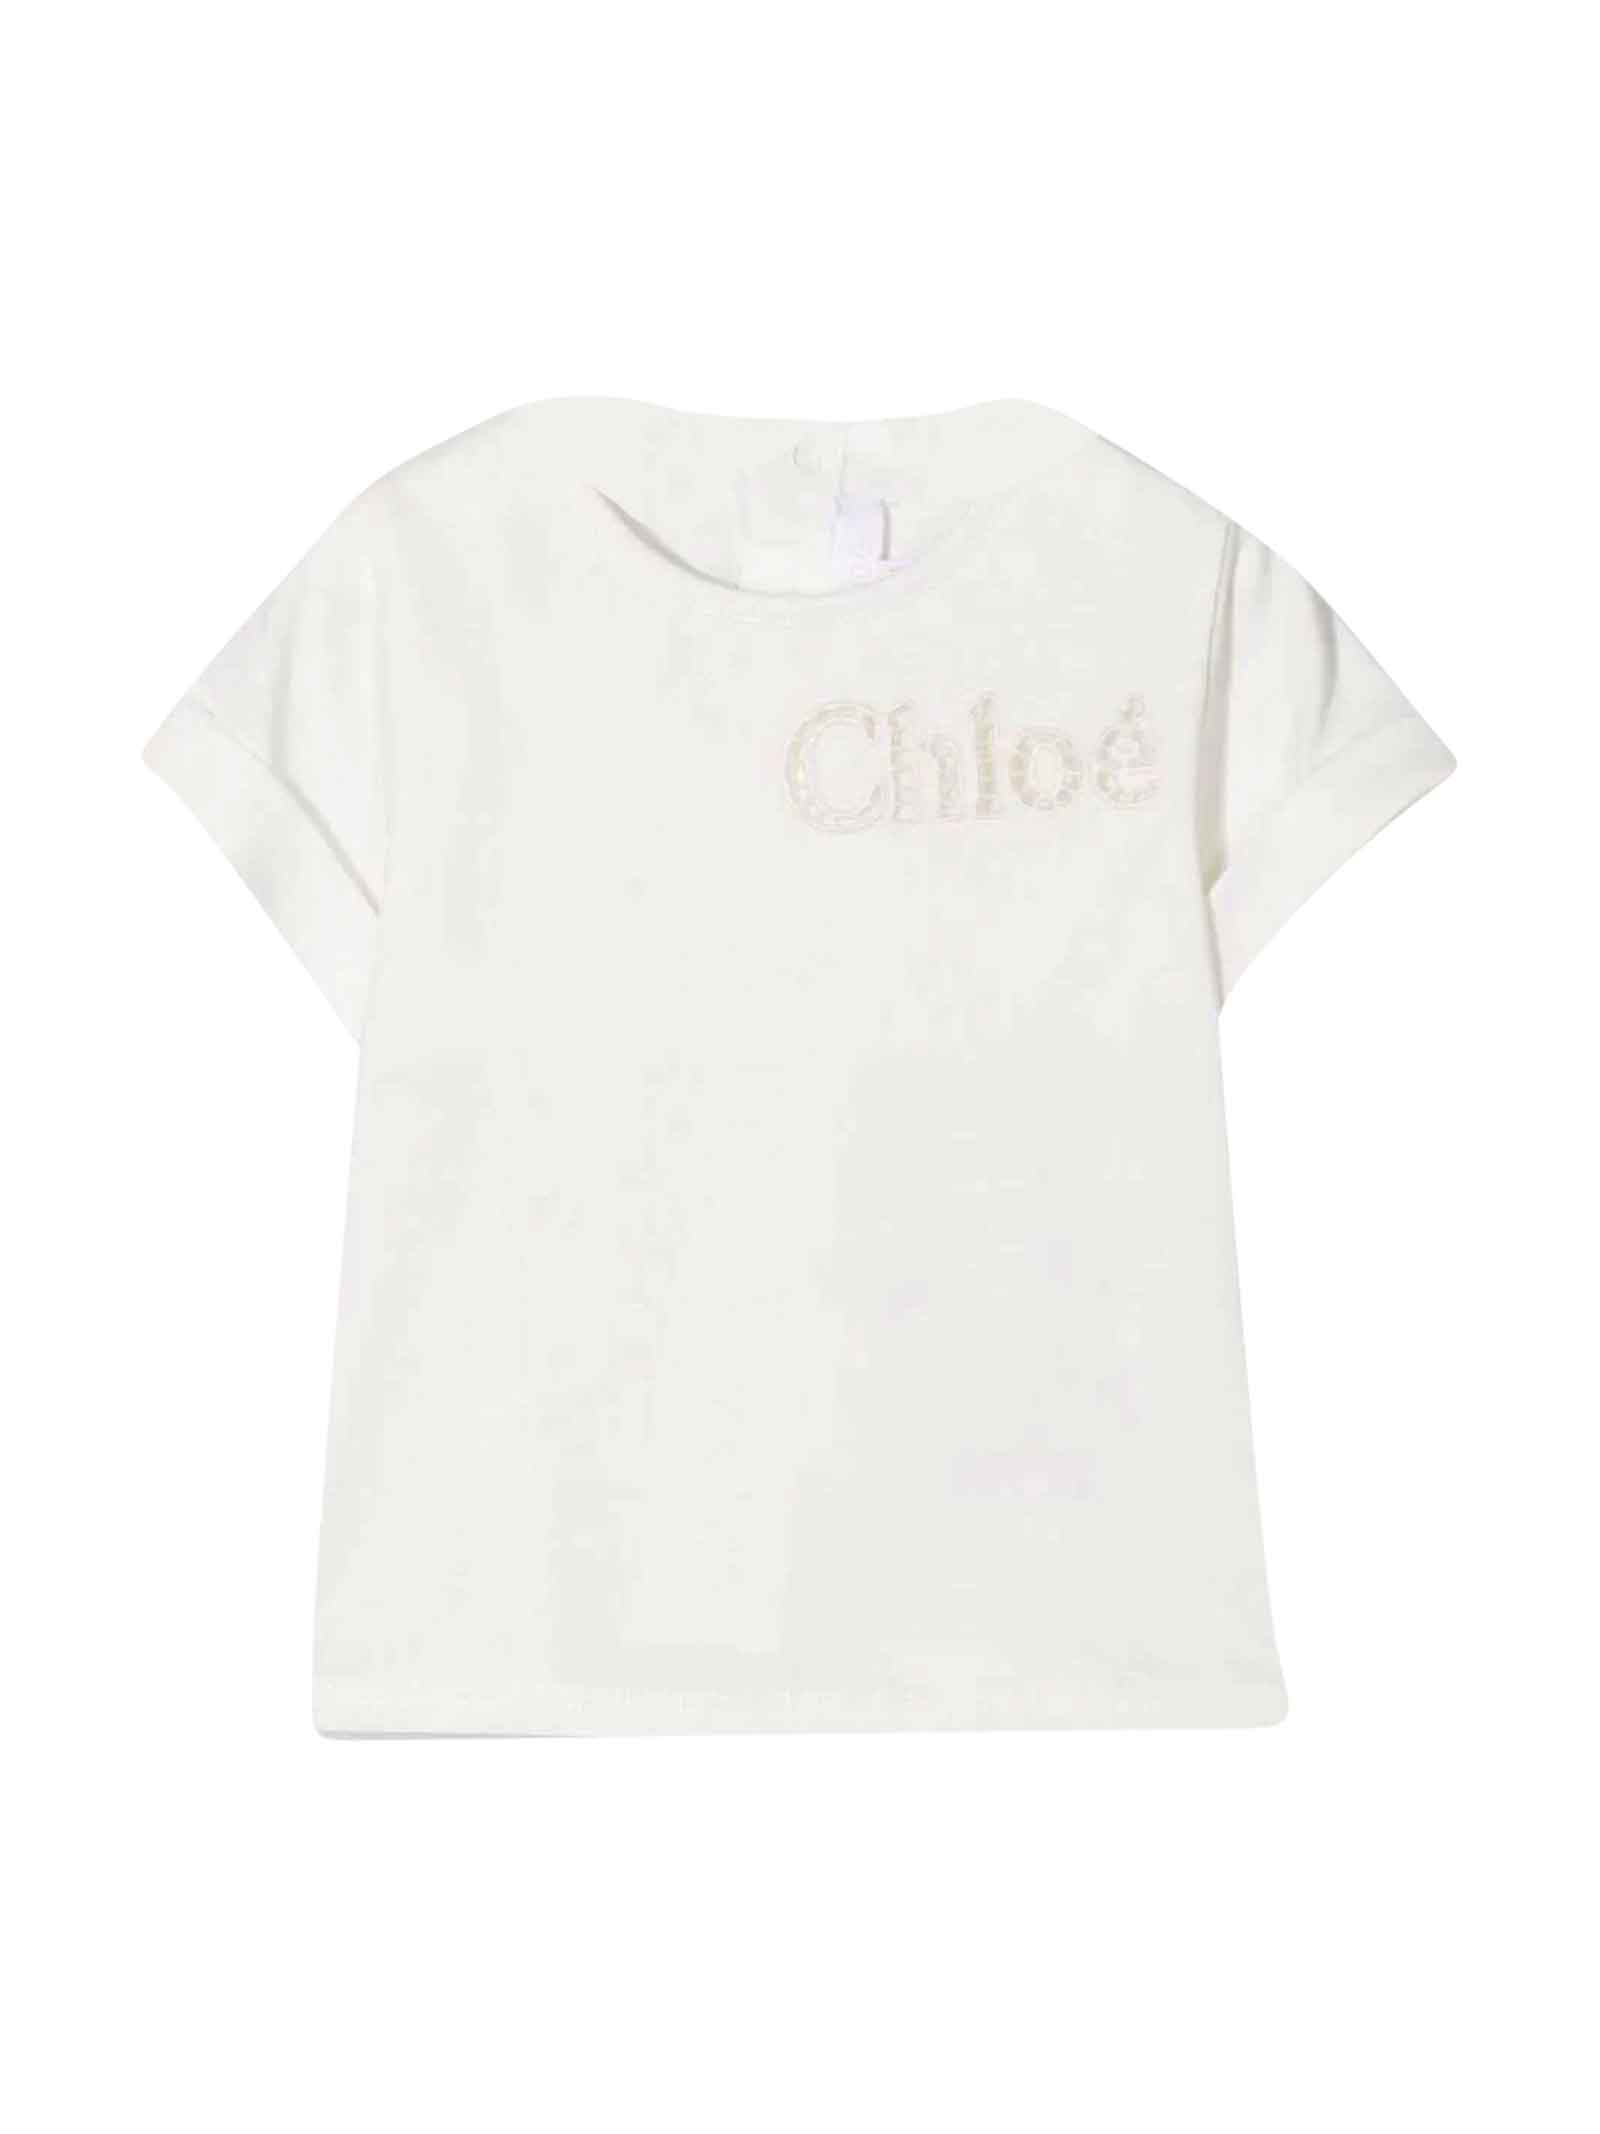 Chloé White T-shirt With Print Chloè